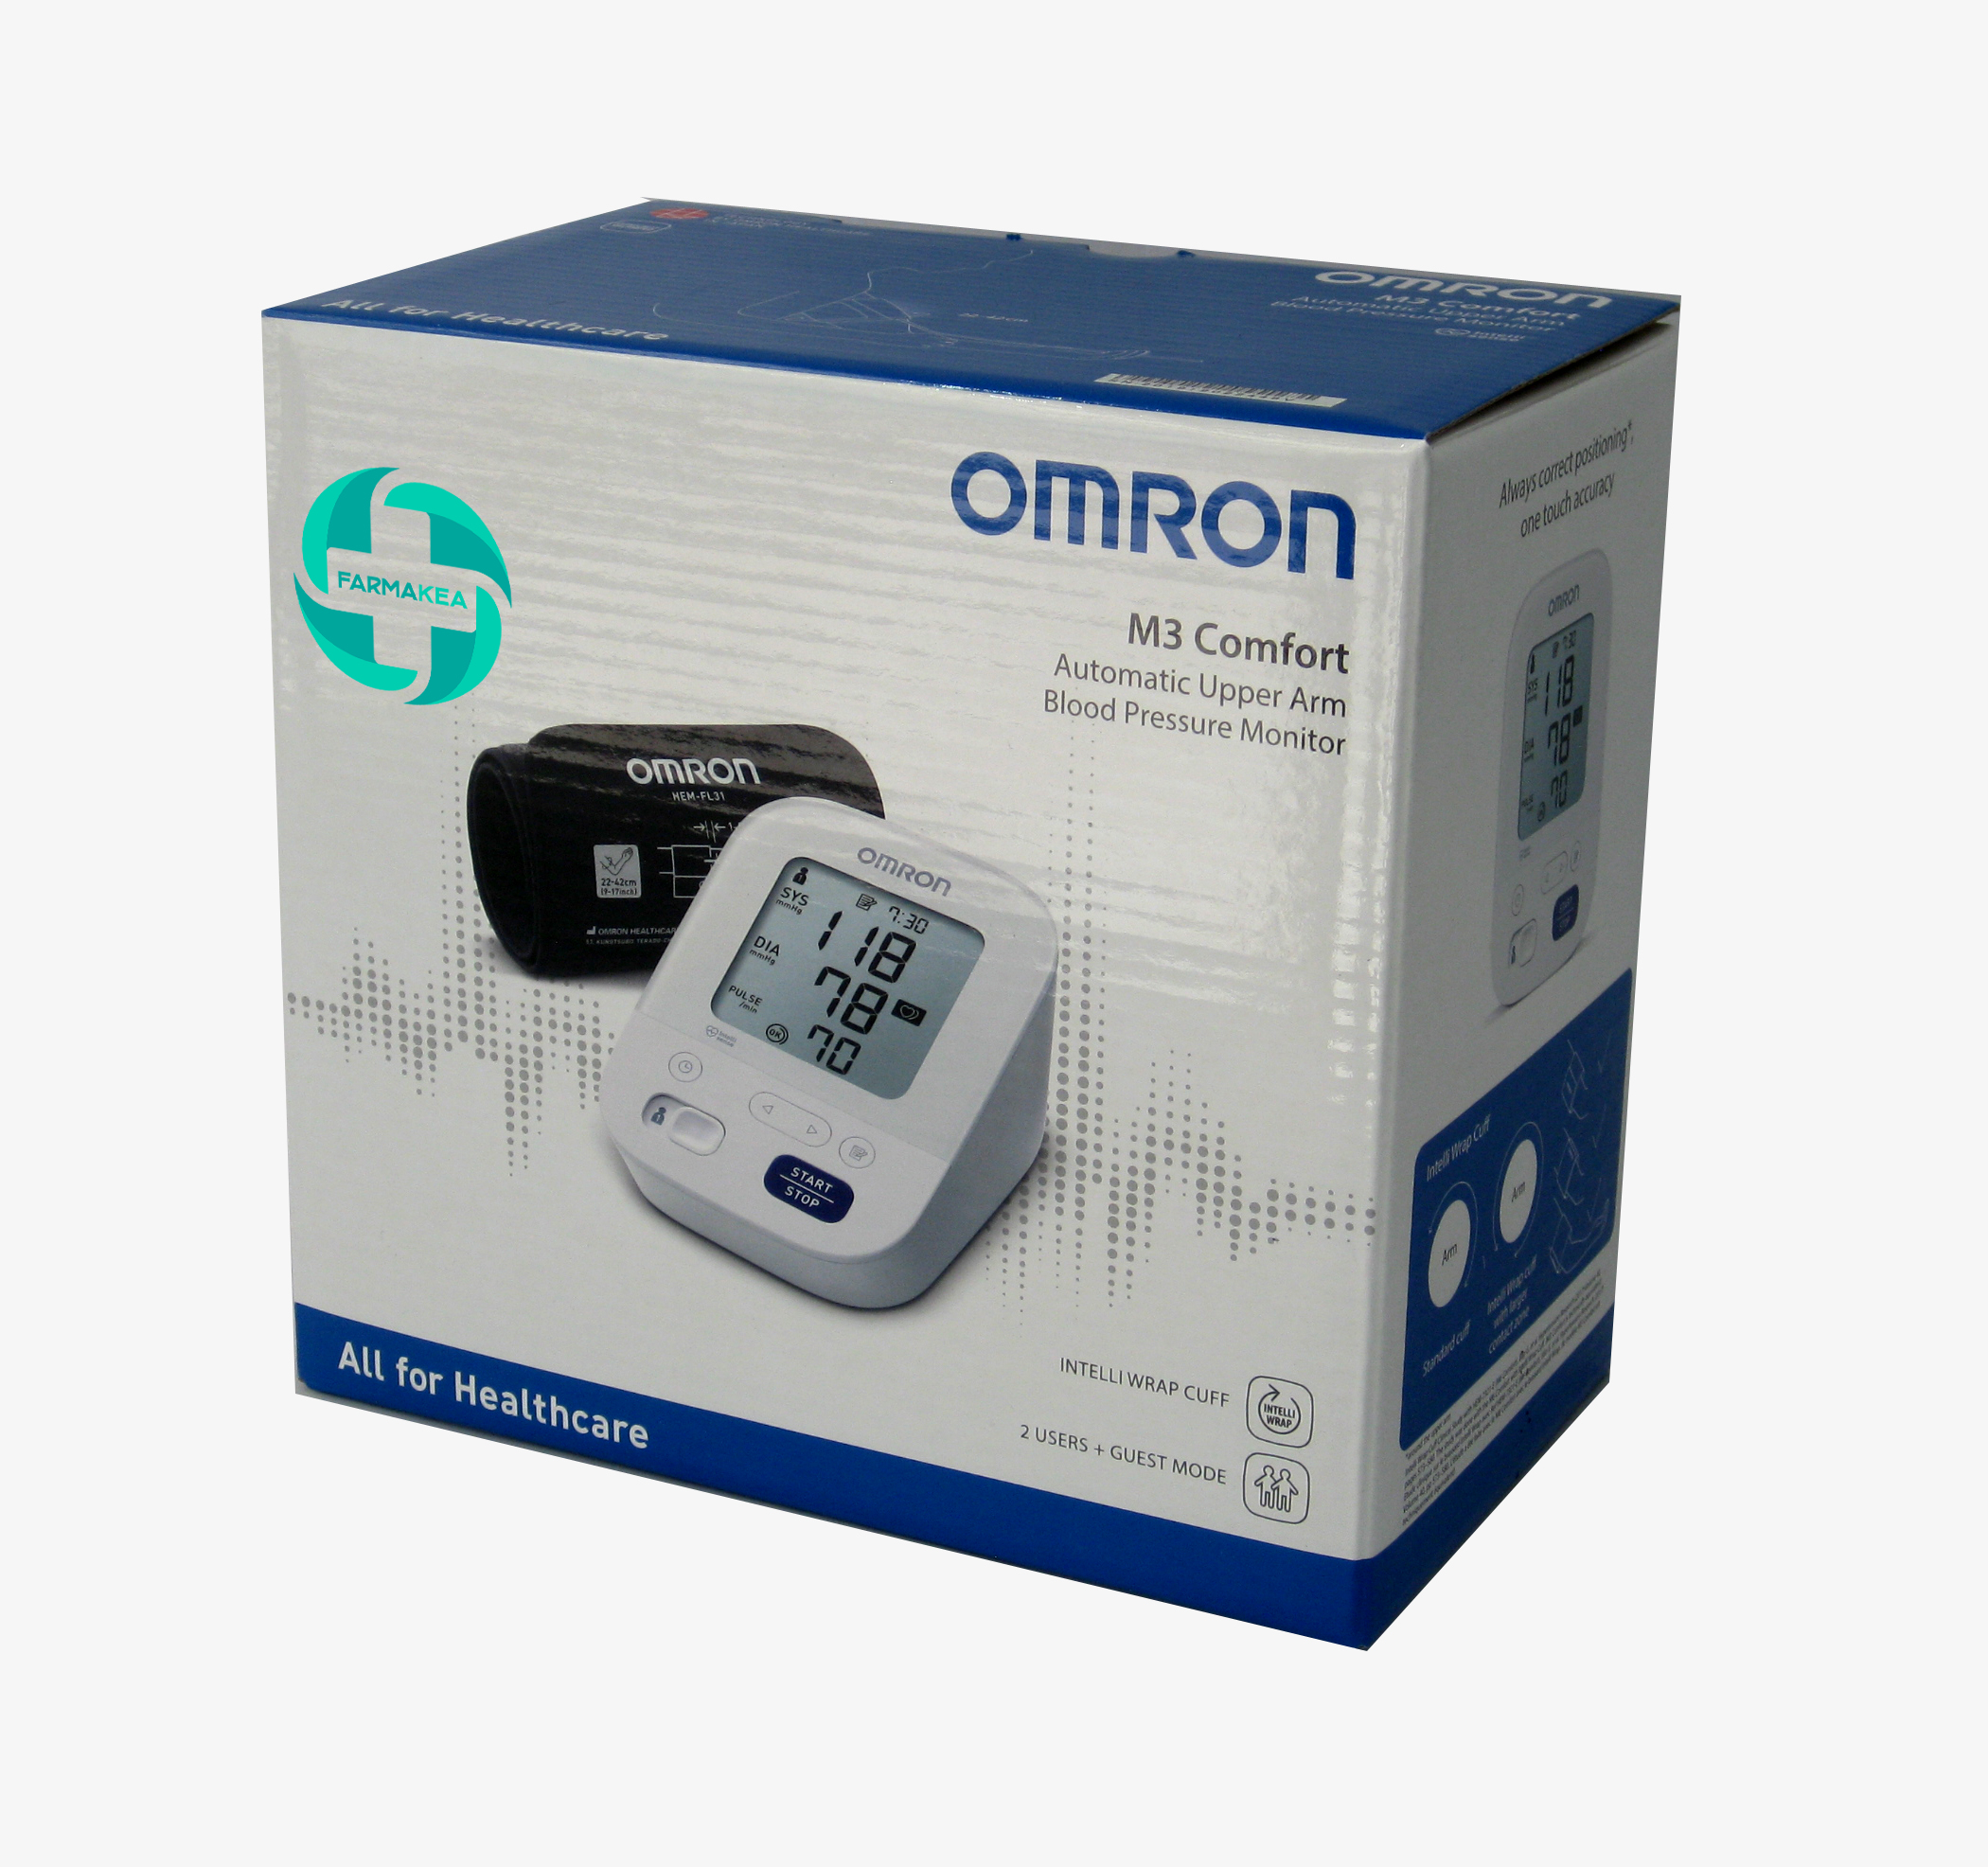 Con el tensiómetro OMRON M3 HEM-7154-podrás medir la presión